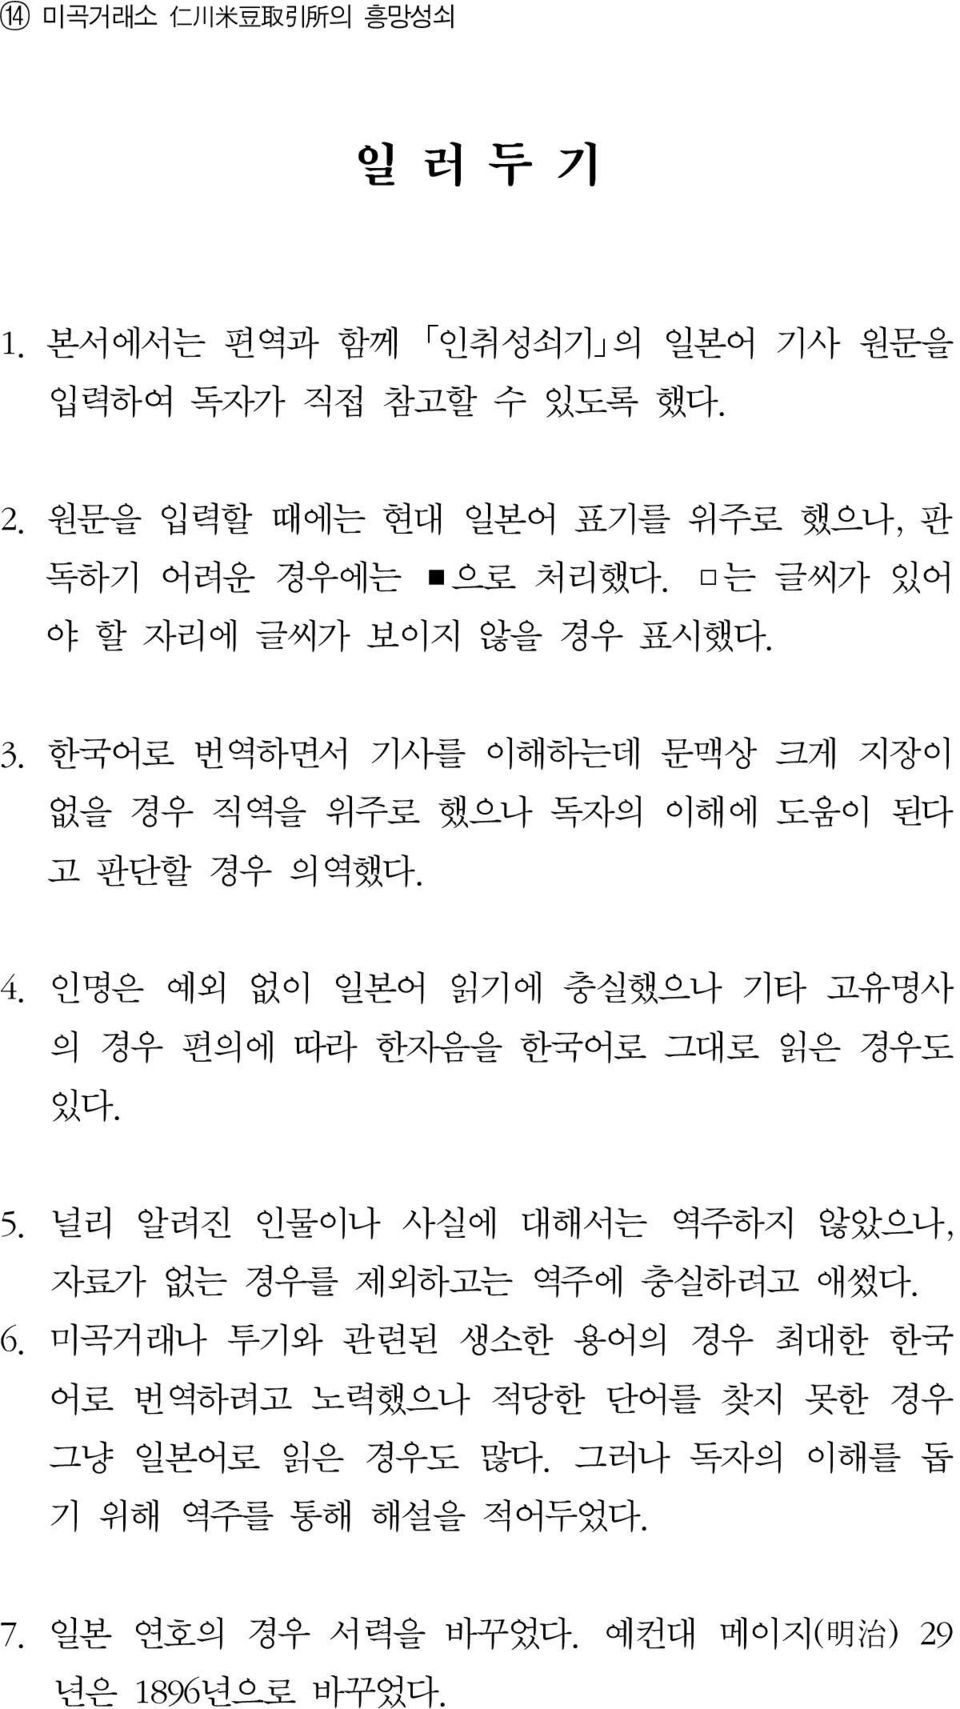 한국어로 번역하면서 기사를 이해하는데 문맥상 크게 지장이 없을 경우 직역을 위주로 했으나 독자의 이해에 도움이 된다 고 판단할 경우 의역했다. 4.